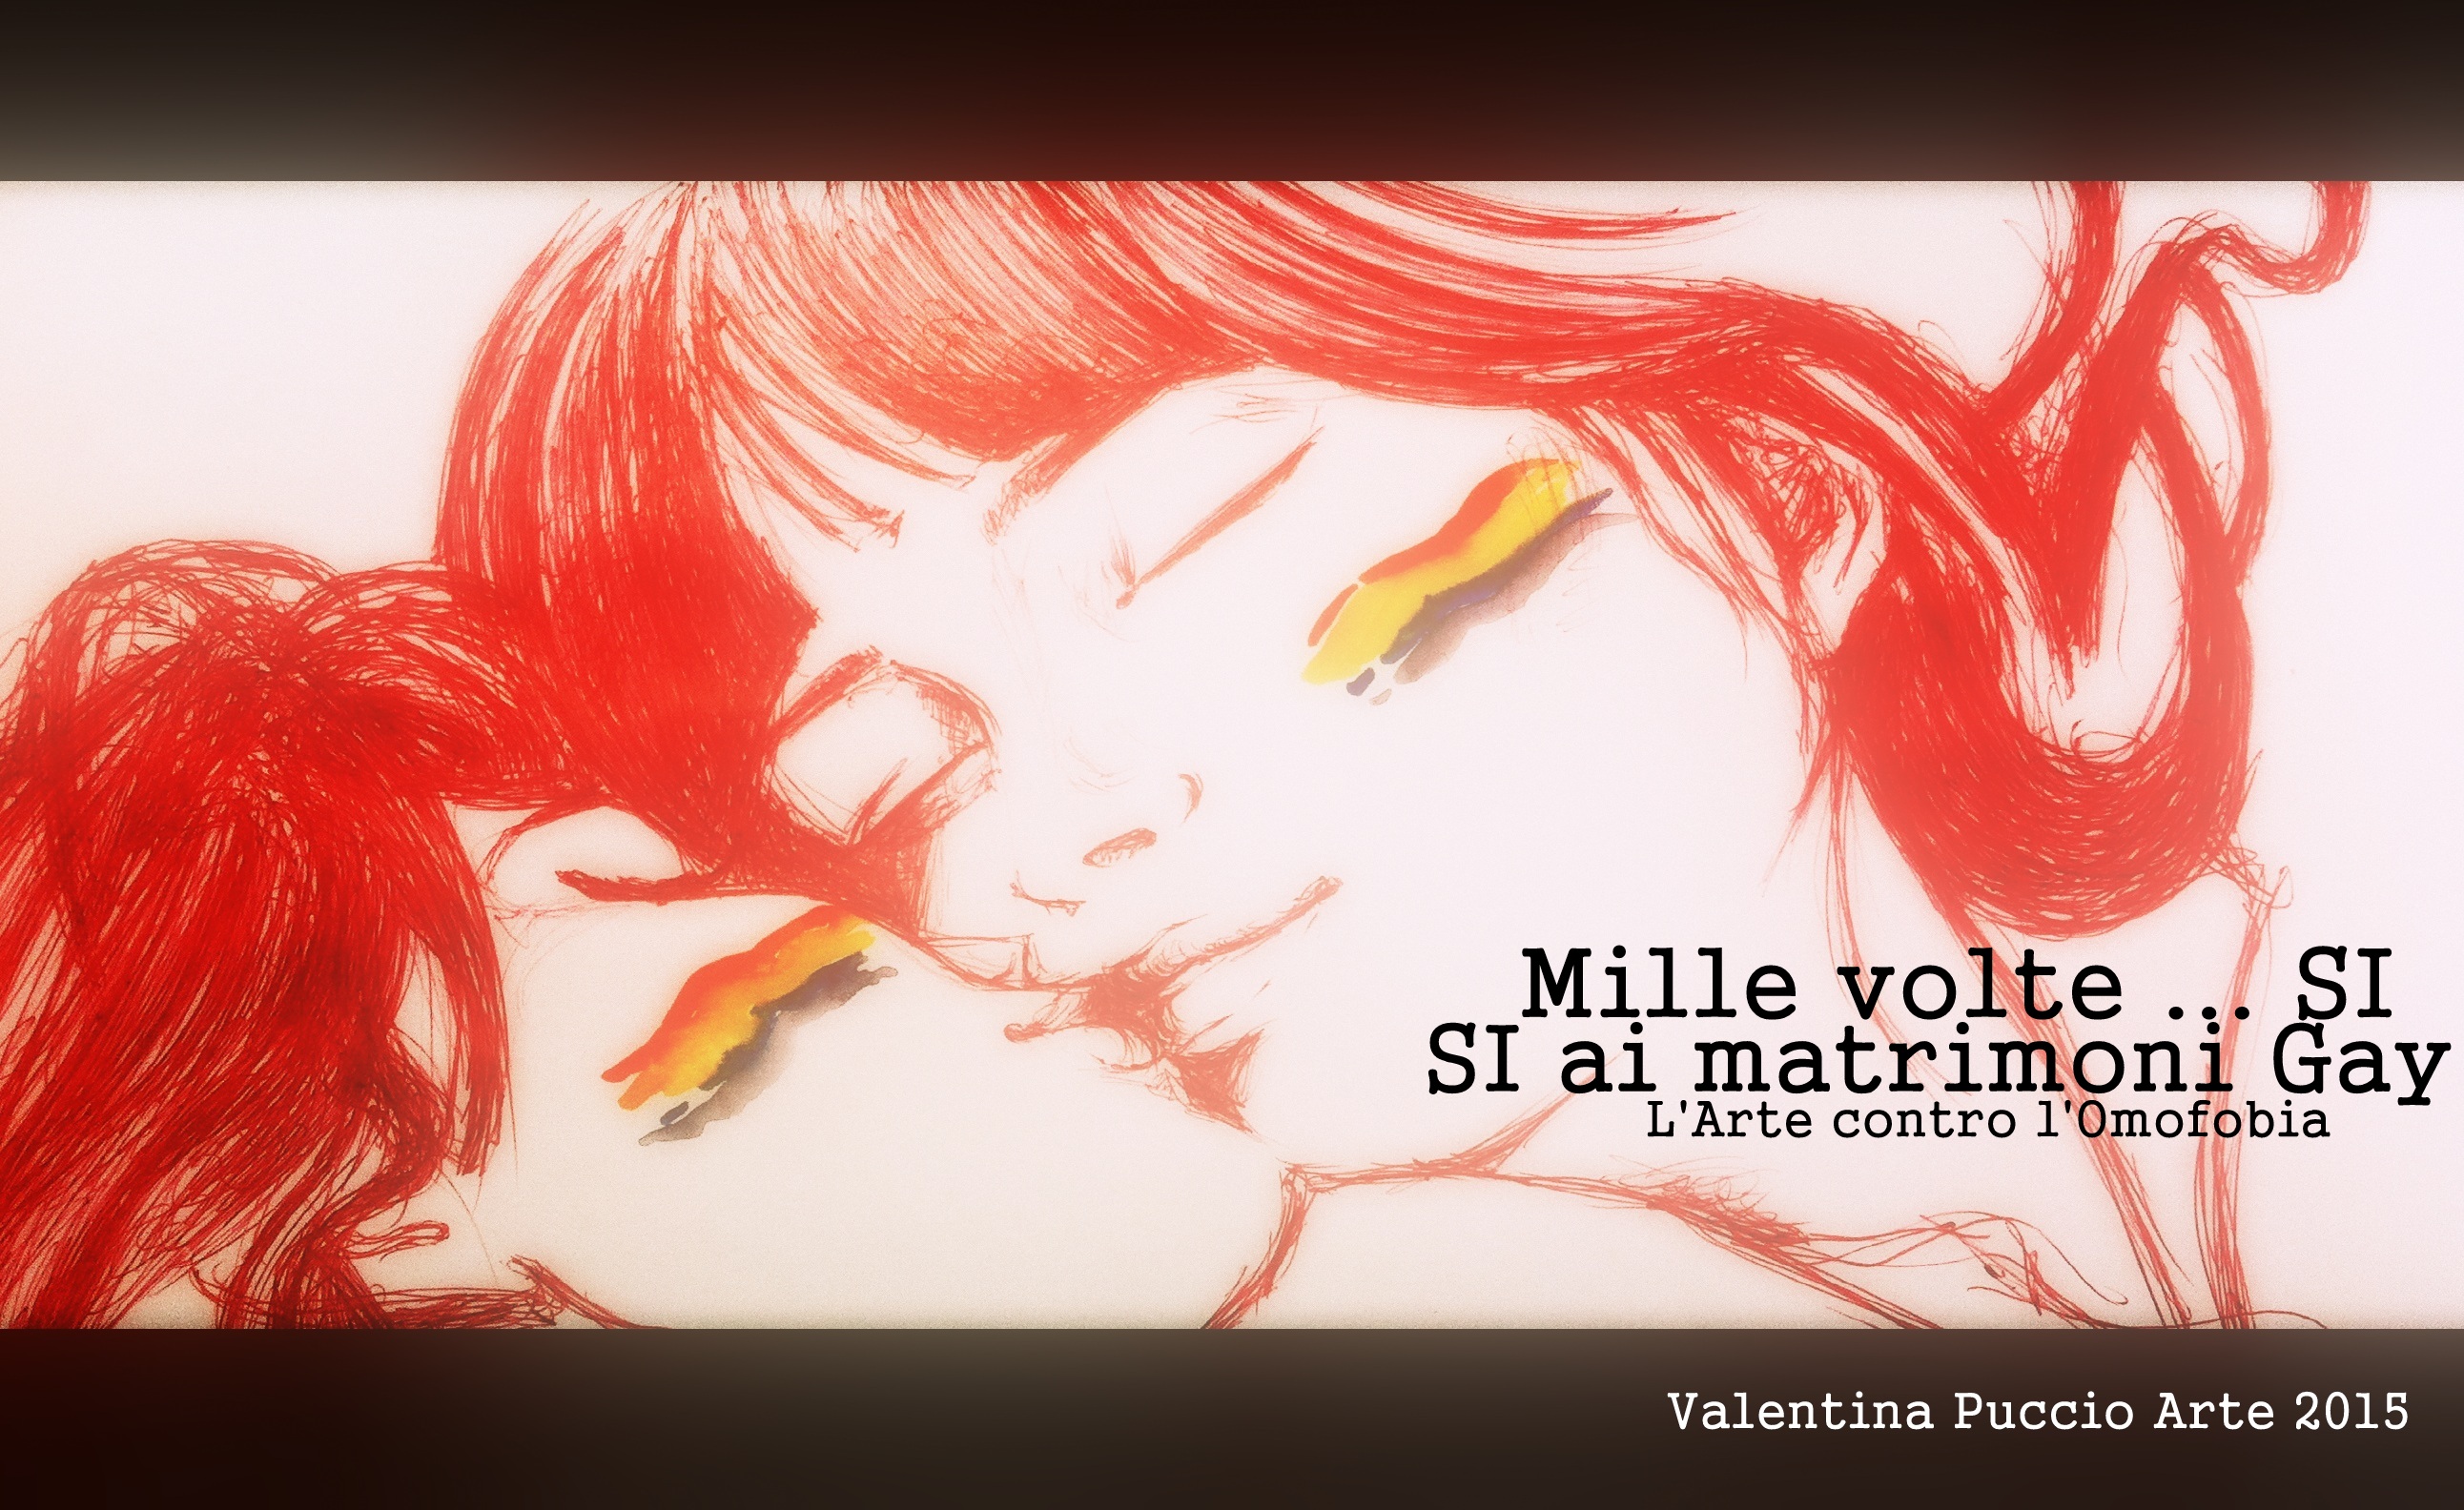 Foto 5 - La pittura di Valentina Puccio diventa una locandina contro l'Omofobia